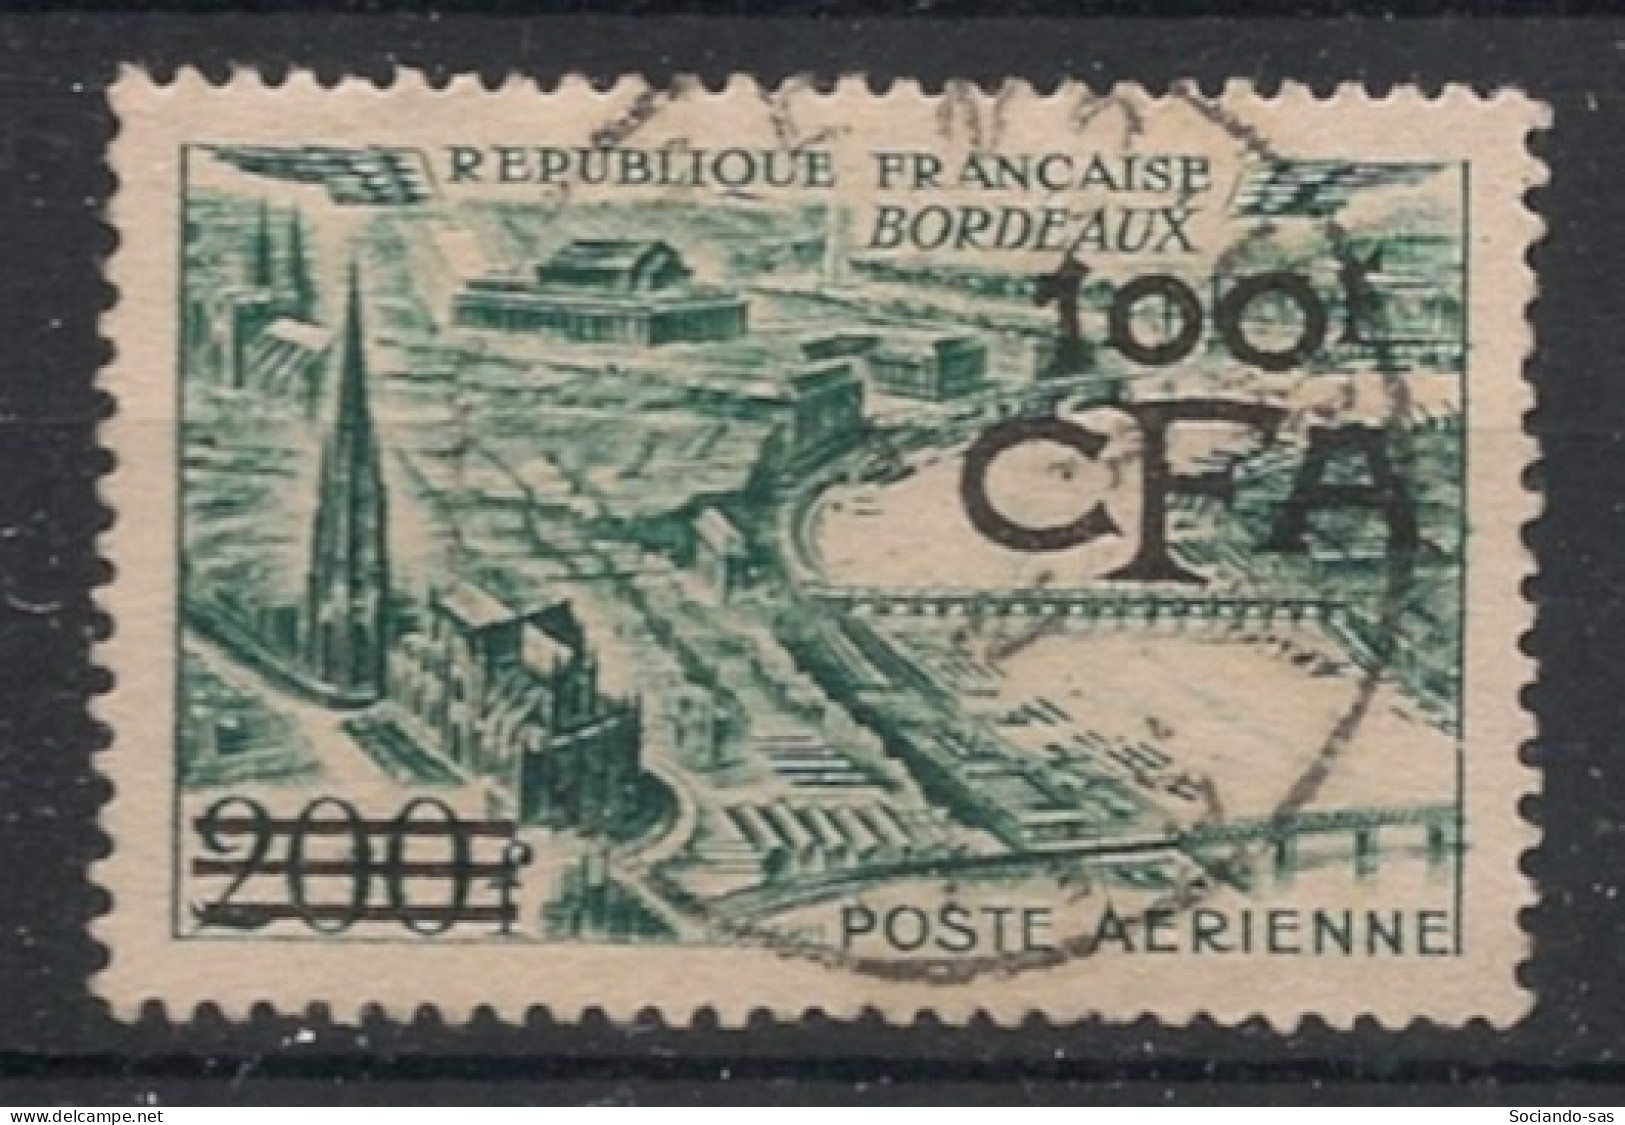 REUNION - 1951 - Poste Aérienne PA N°YT. 49 - Bordeaux 100f Sur 200f - Oblitéré / Used - Luftpost